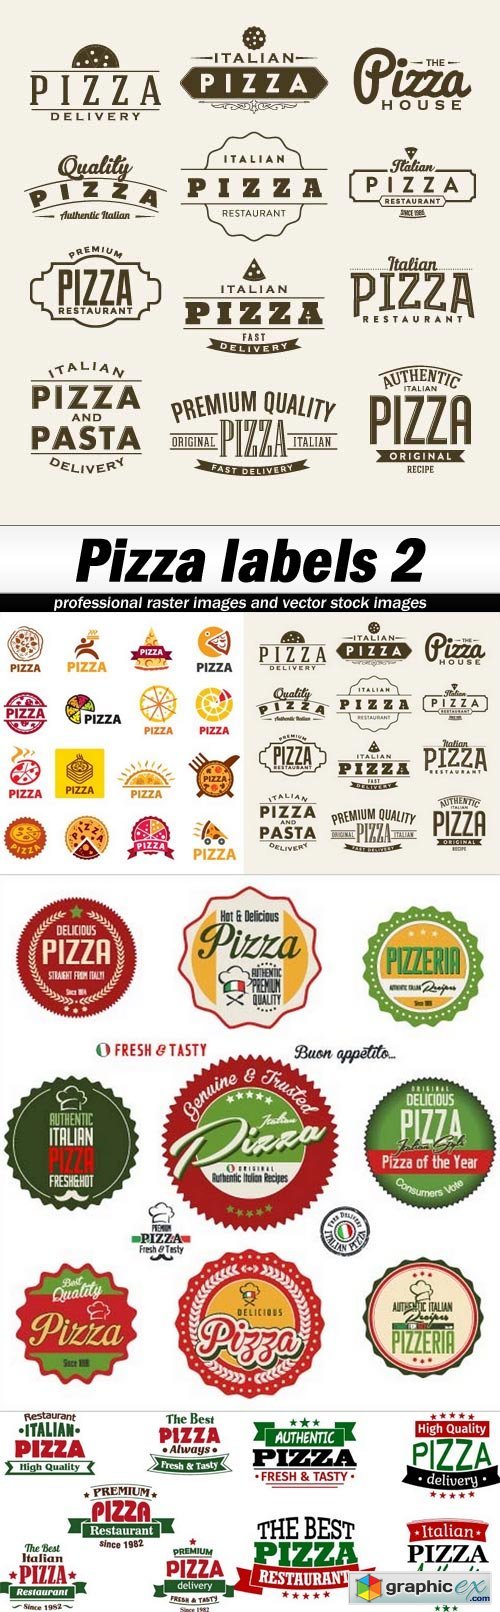 Pizza labels 2